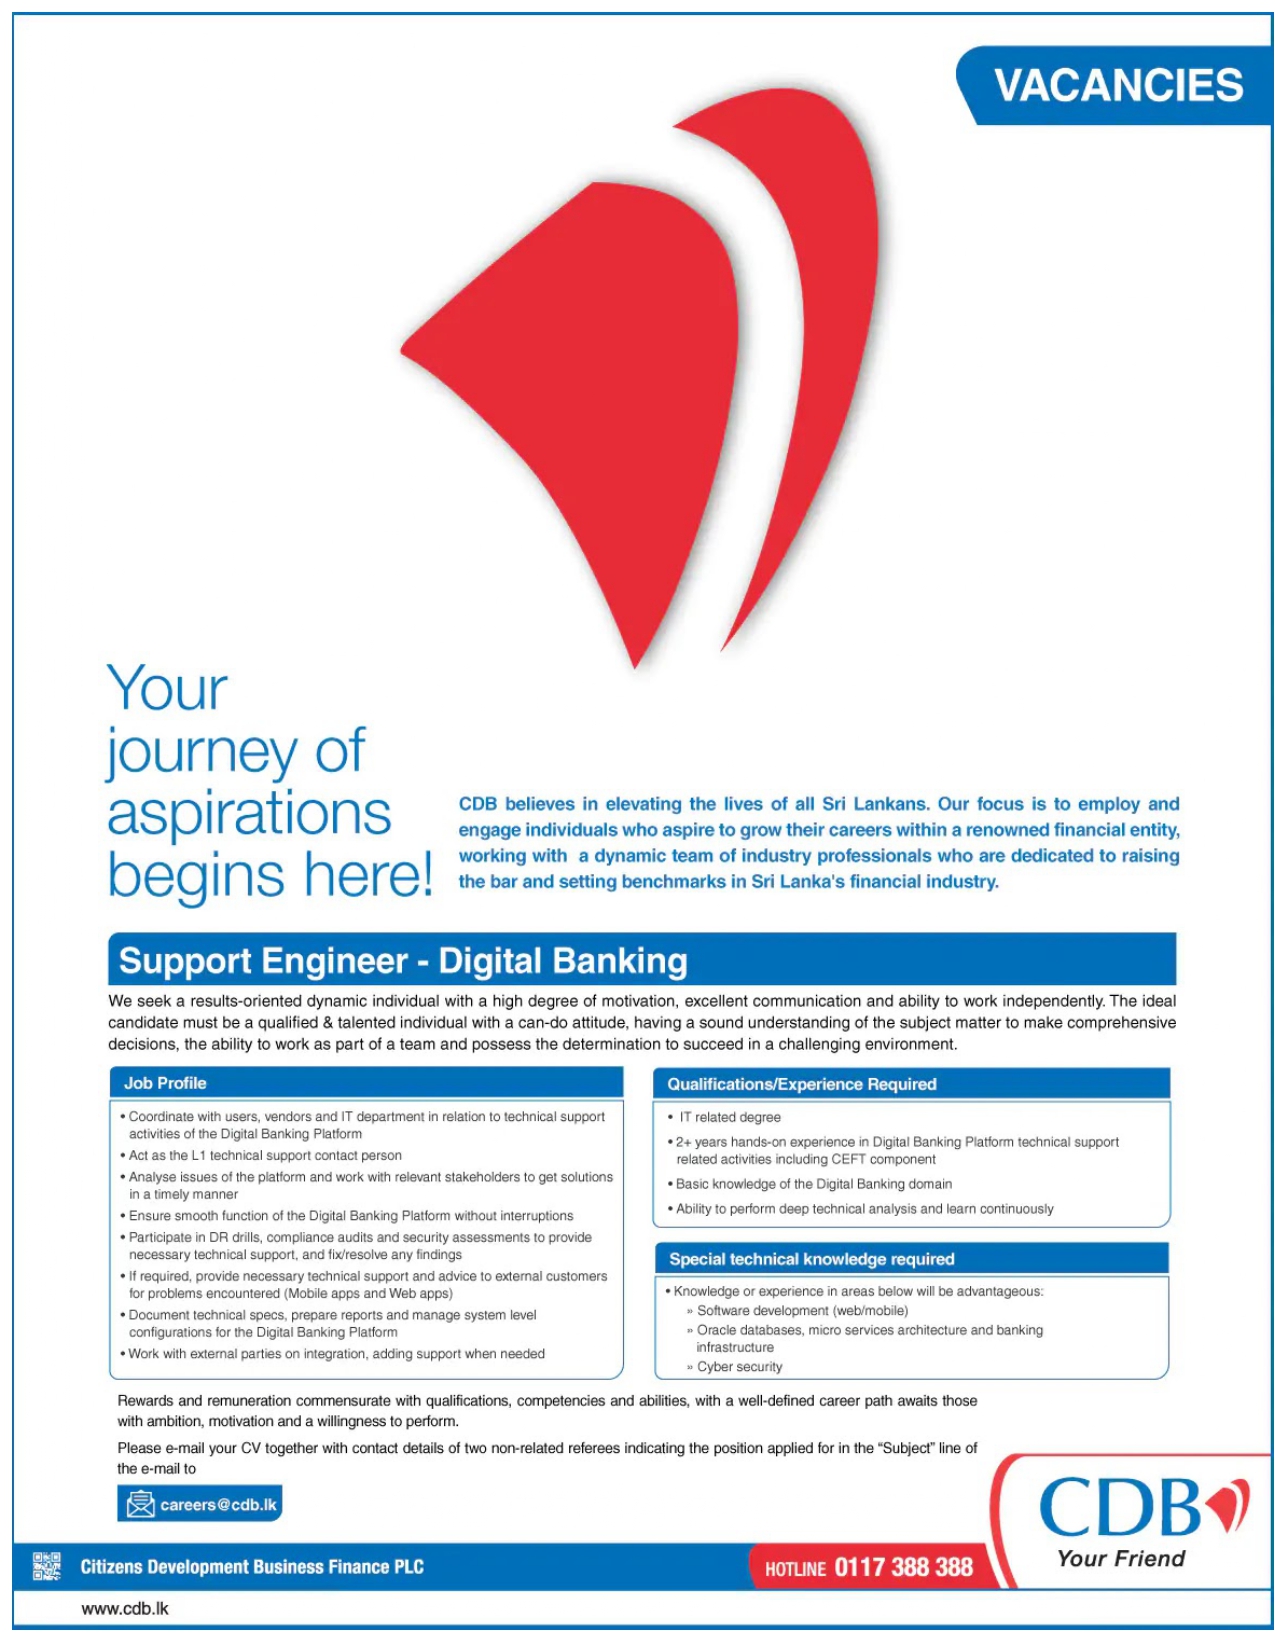 Support Engineer (Digital Banking) Vacancies - CDB Finance Jobs Vacancies